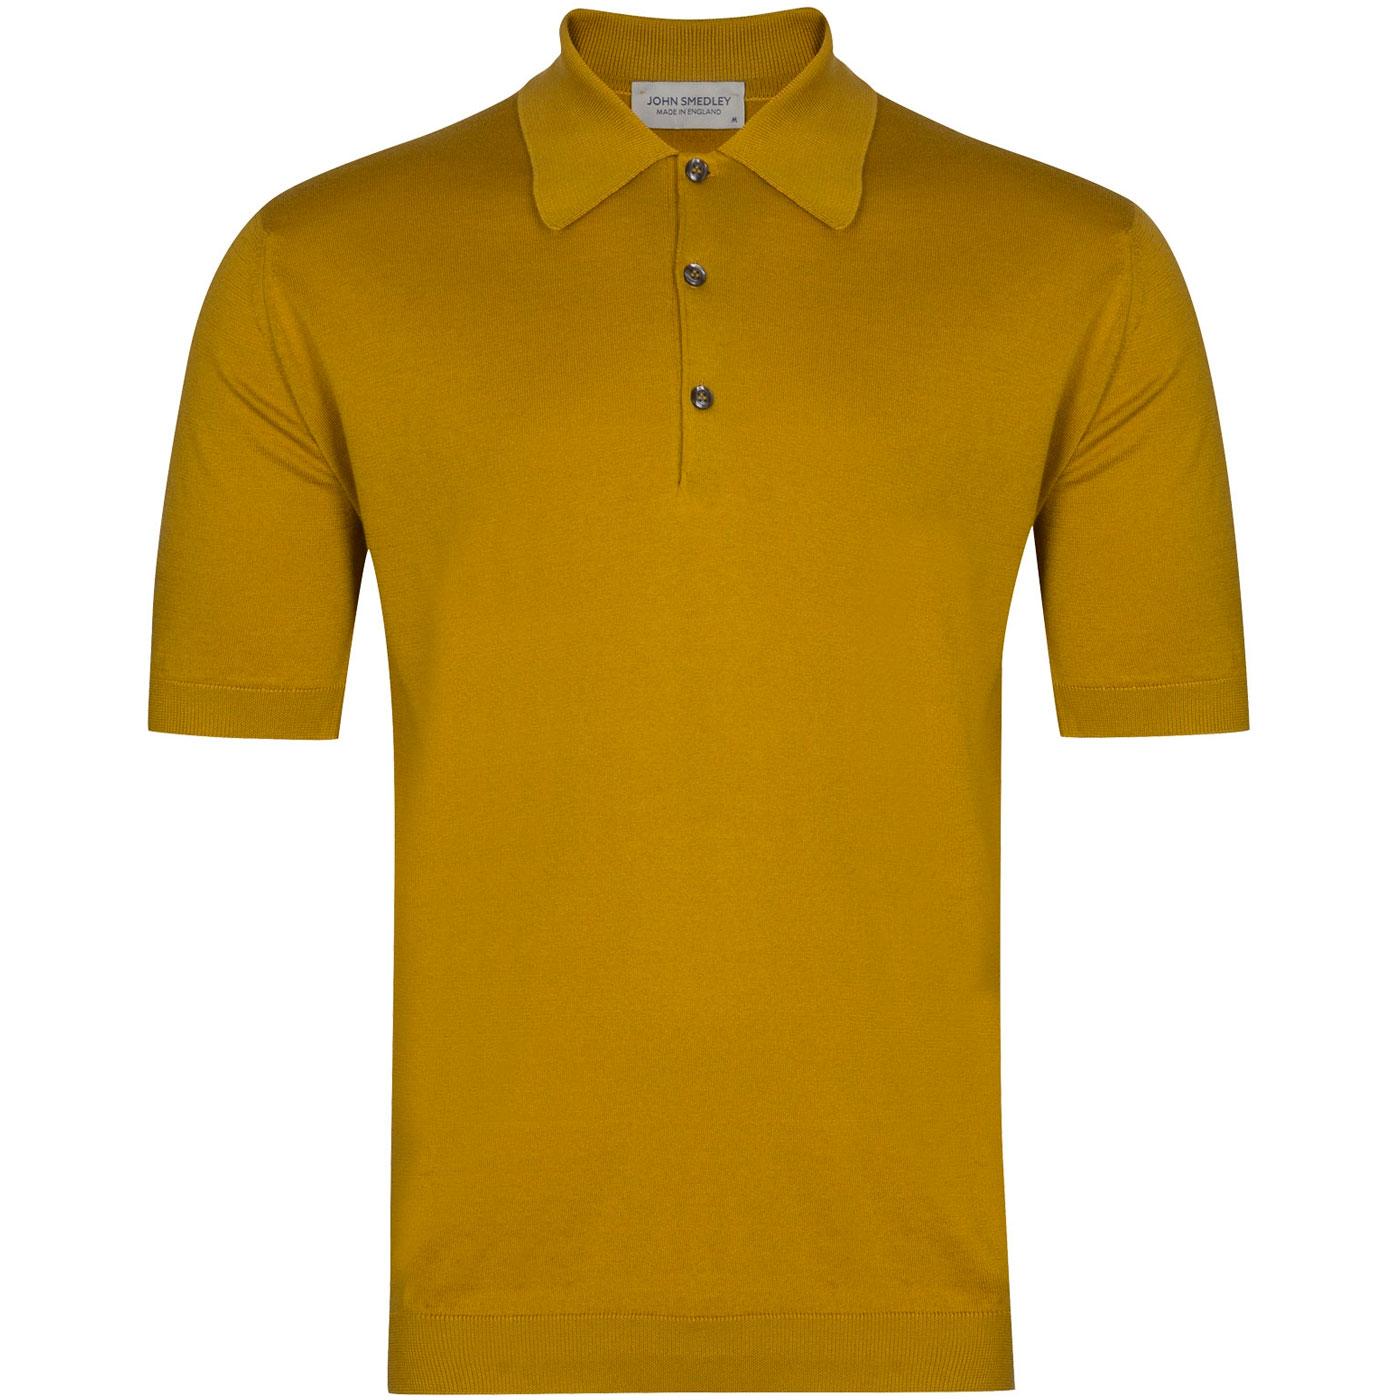 Isis JOHN SMEDLEY Made in England Polo Top Stamen Yellow